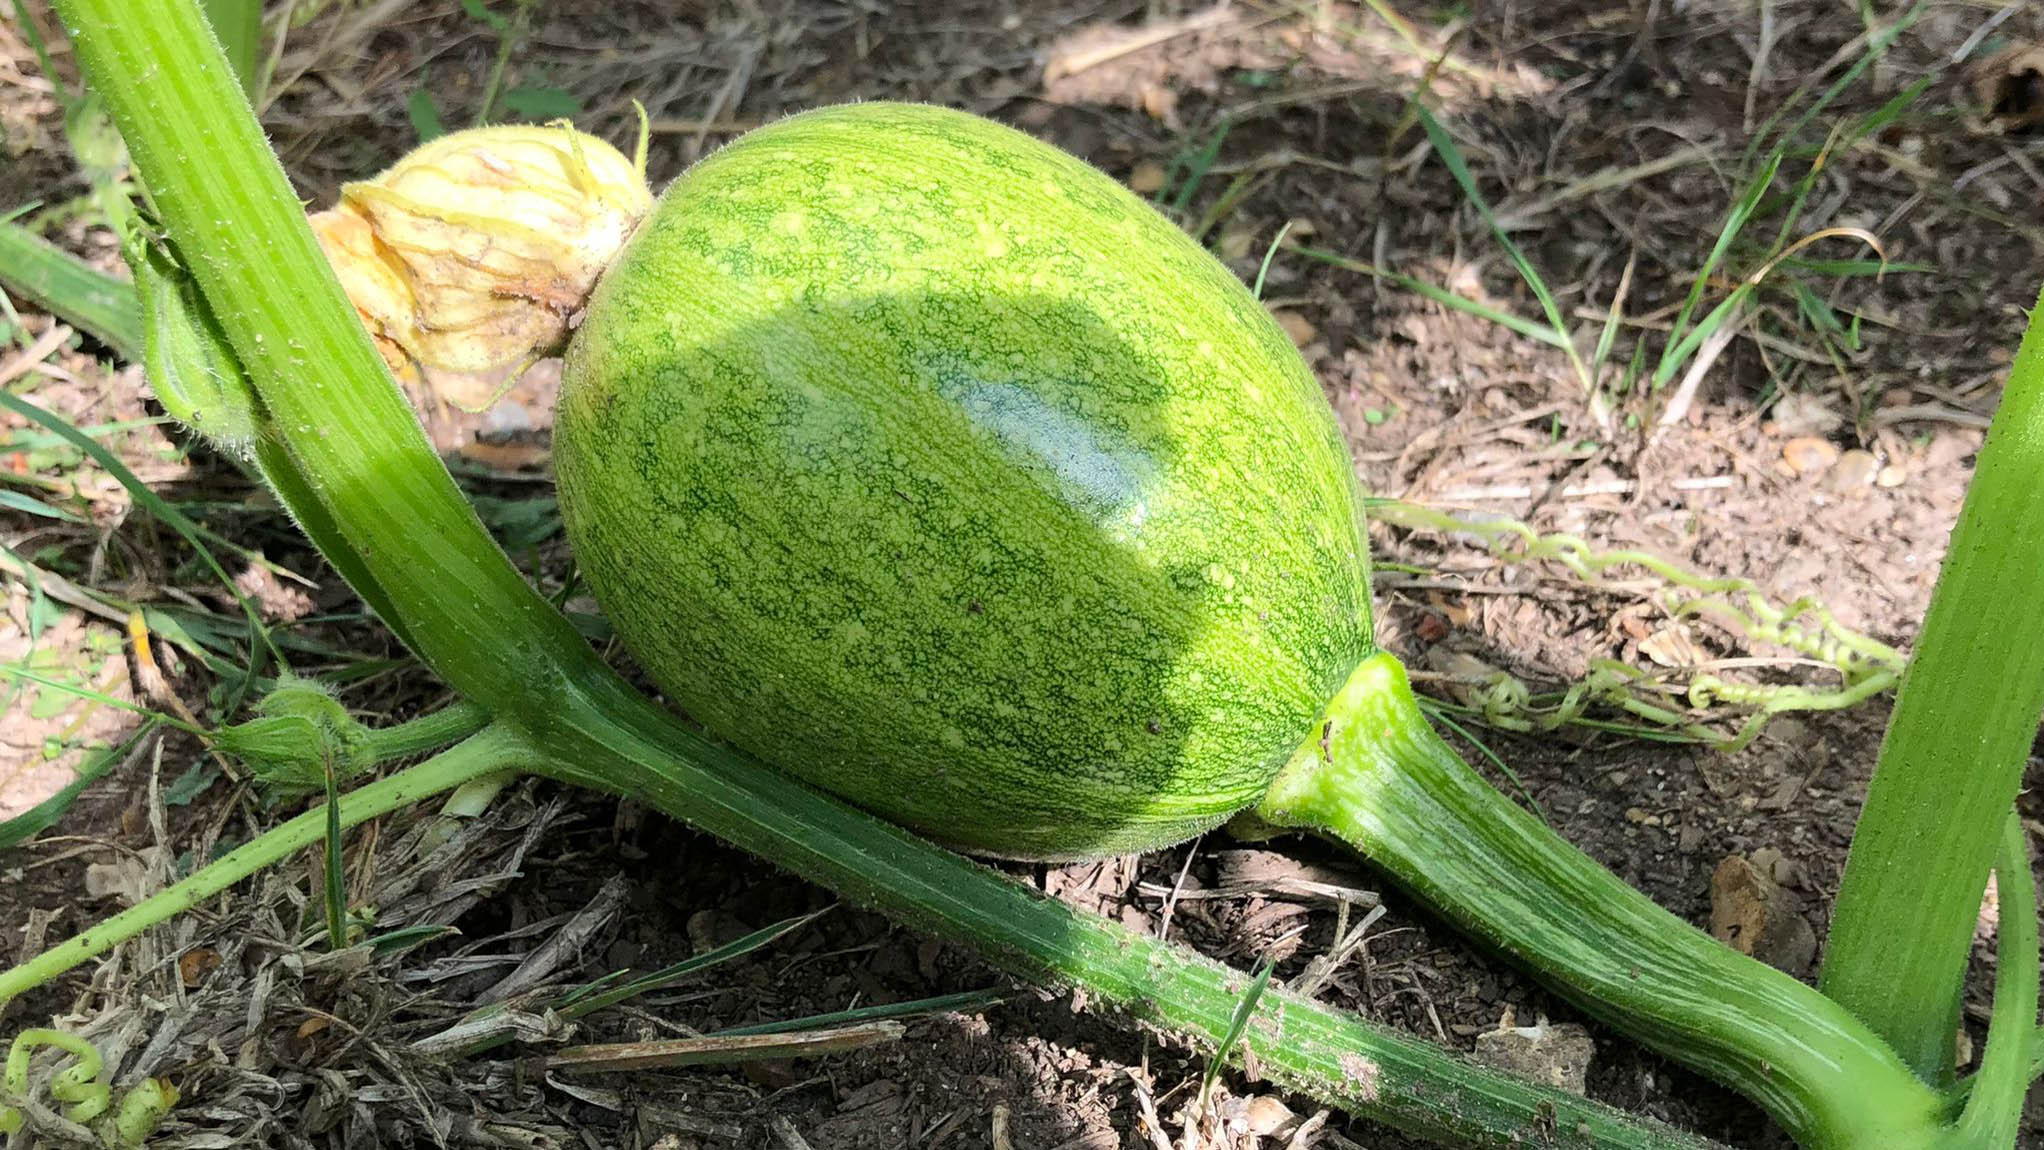 A pumpkin growing on the stem